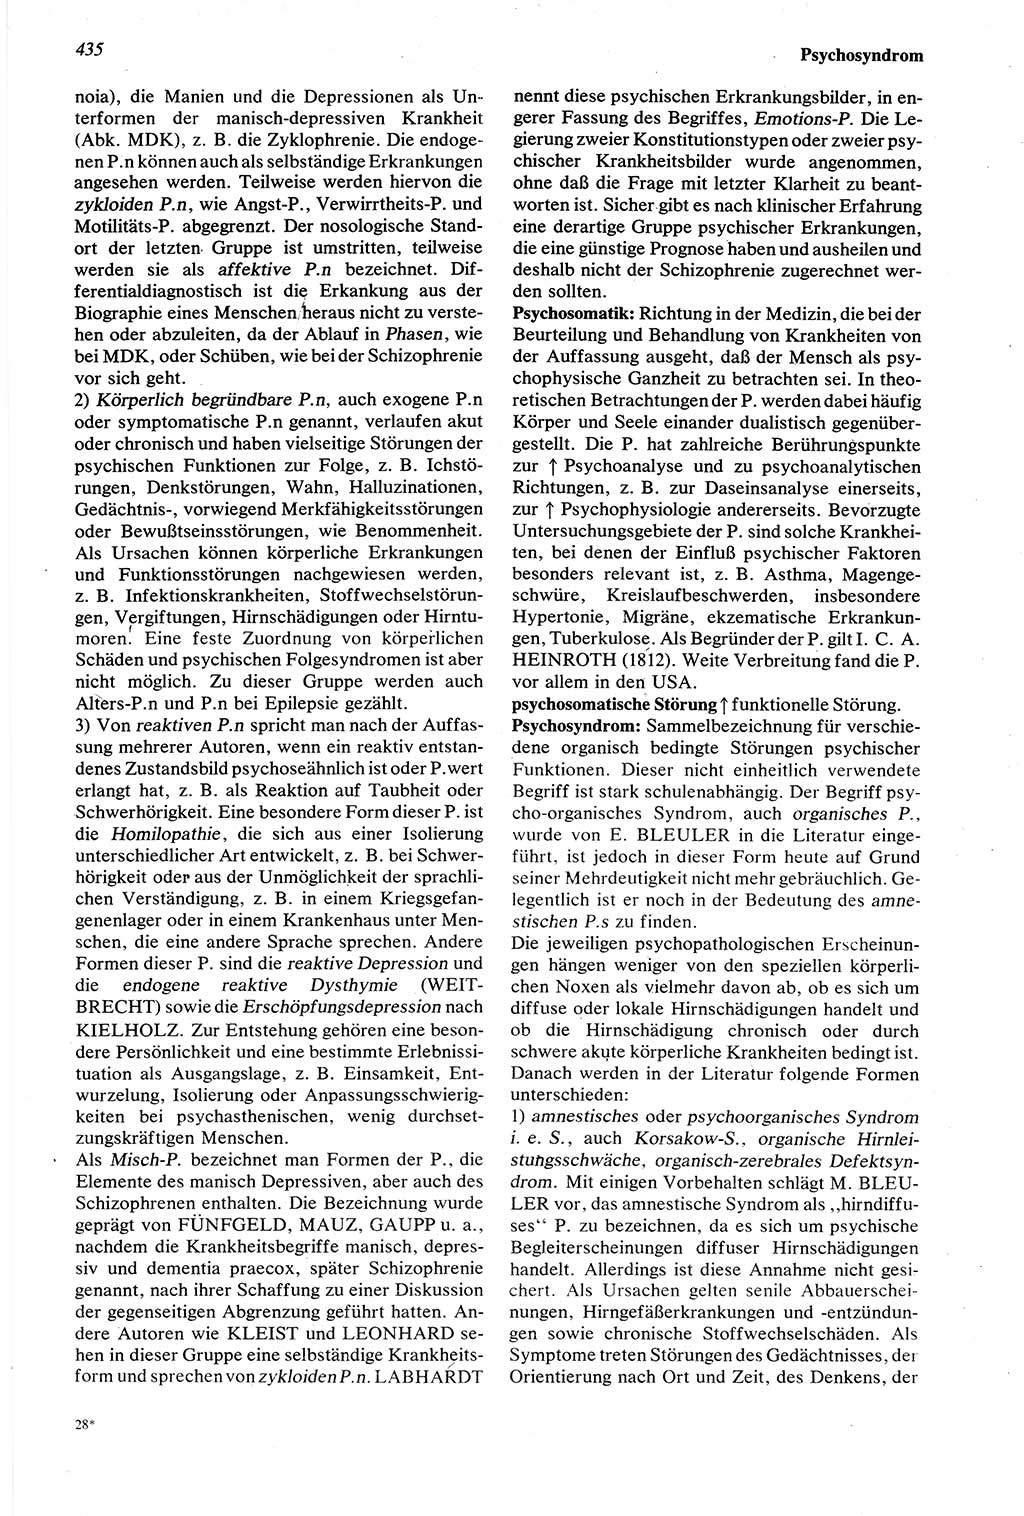 Wörterbuch der Psychologie [Deutsche Demokratische Republik (DDR)] 1976, Seite 435 (Wb. Psych. DDR 1976, S. 435)